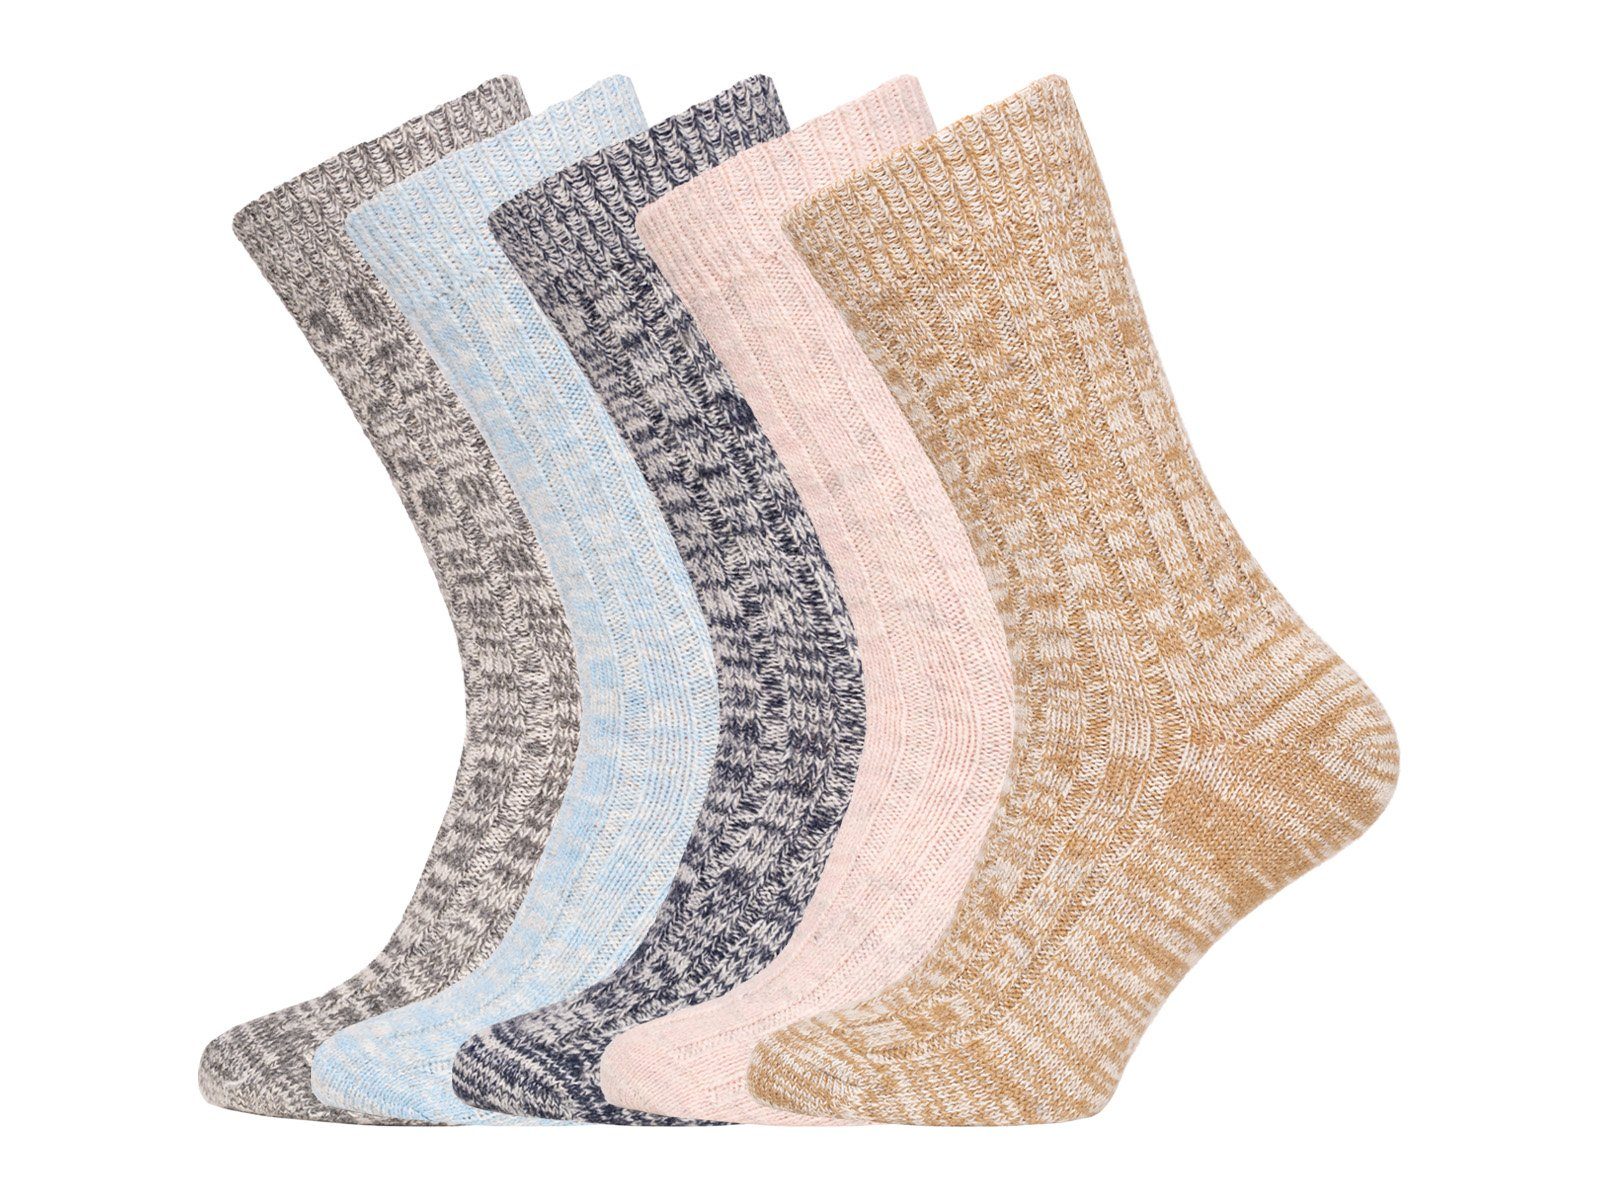 HomeOfSocks Socken Melierte warme 1 Dünne (Paar, mit Navy 75% Paar) (Schurwolle) und Wollsocken aus Wolle 75% Wollanteil Wollsocken